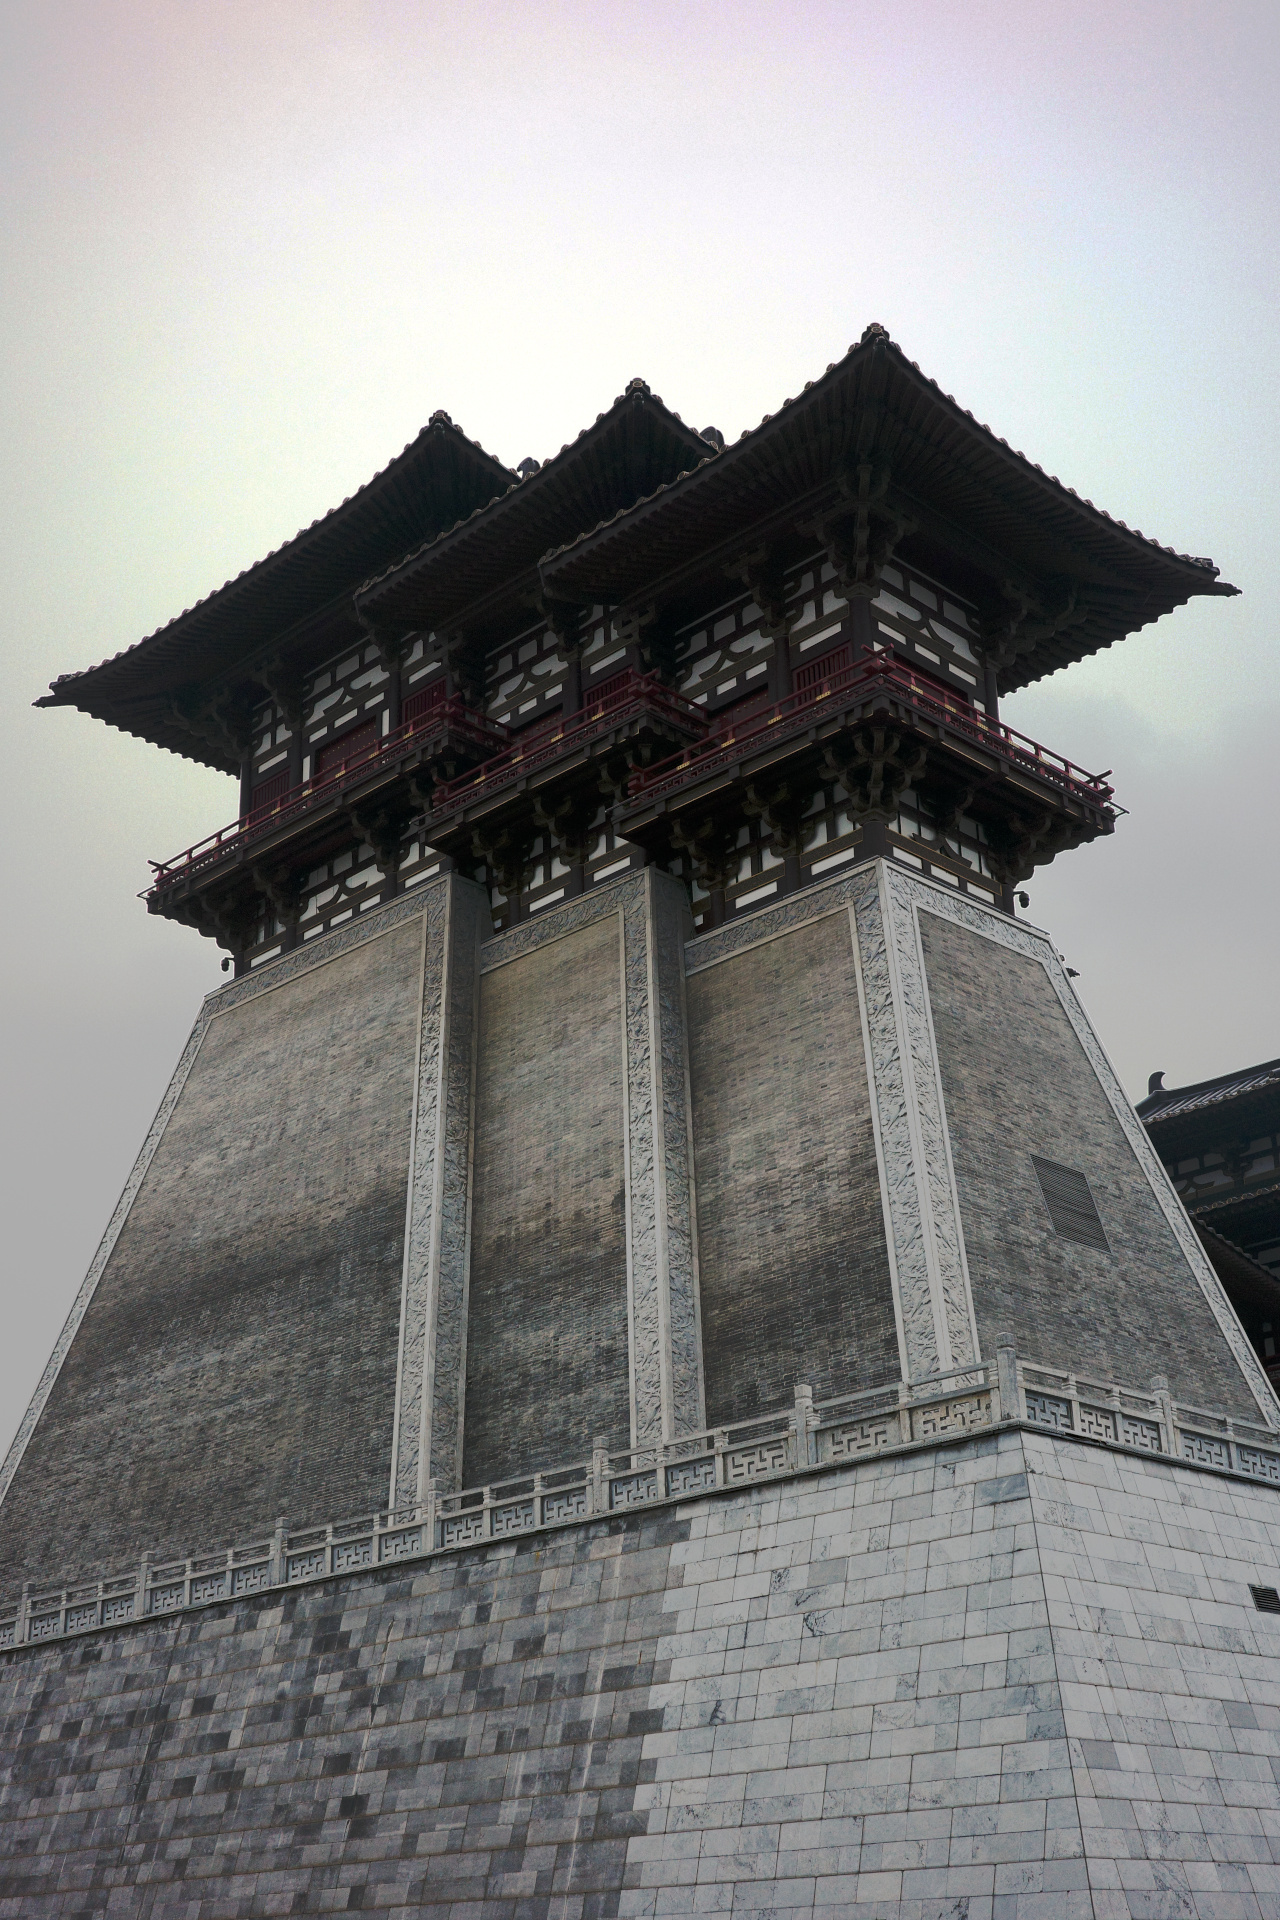 Yingtian Gate